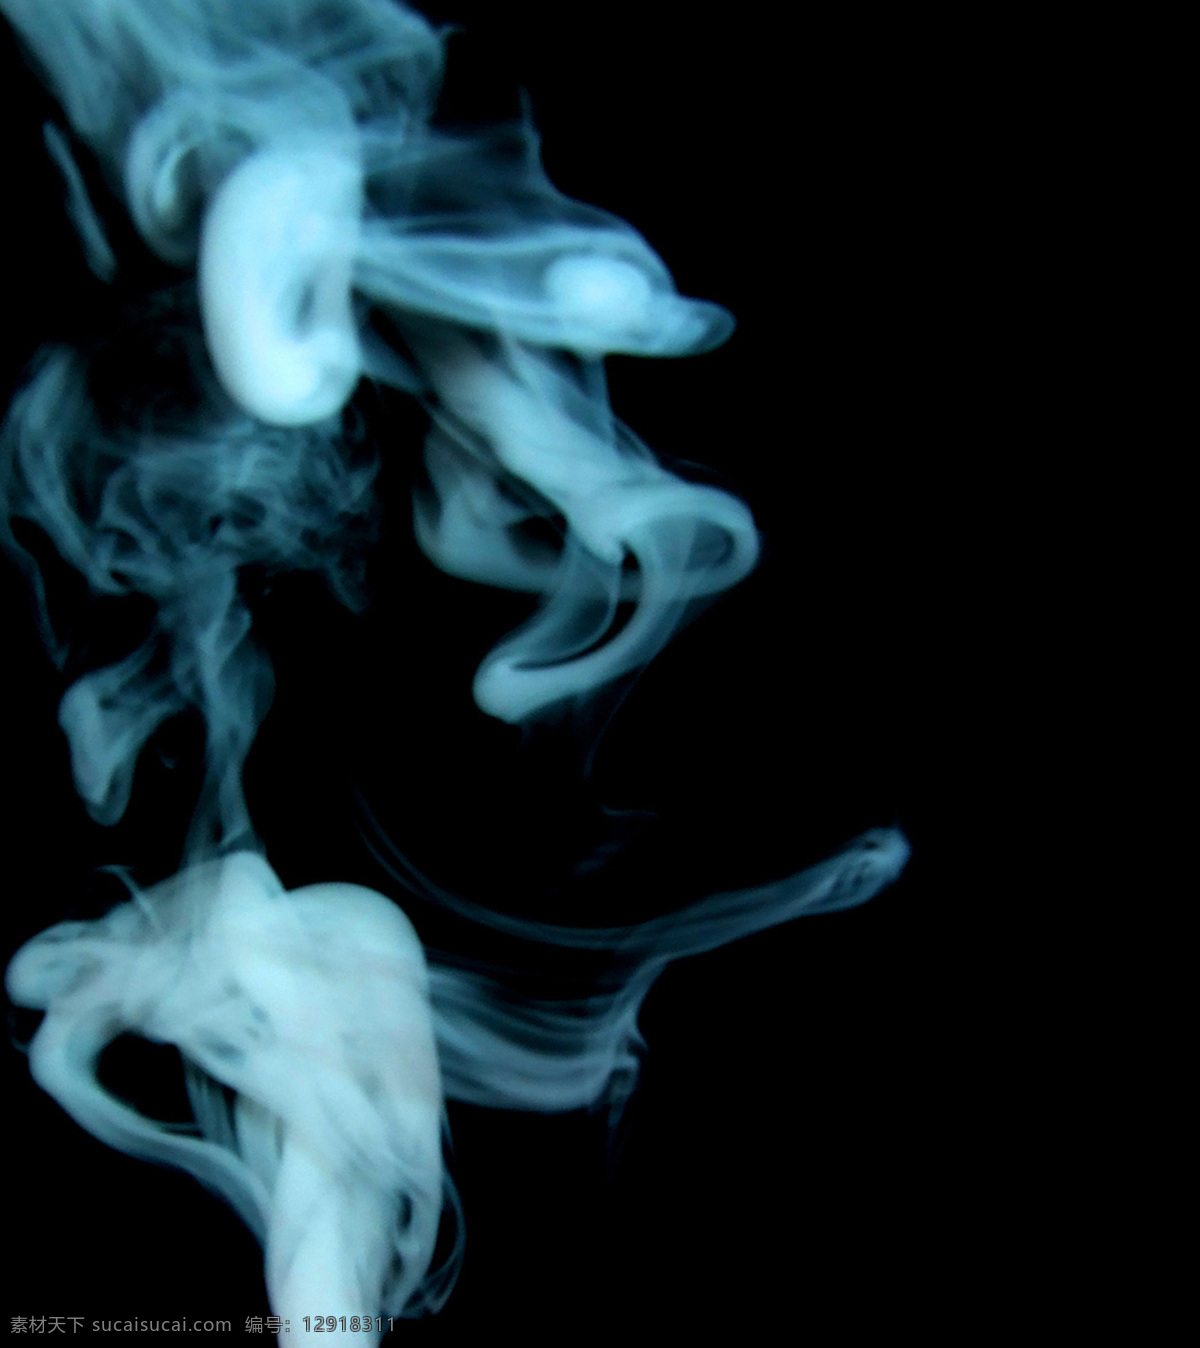 烟雾的魔幻 烟 烟雾 烟火 烟花素材 烟草 烟花鞭炮 魔 魔法 魔术 魔幻 魔兽墨迹 抽象底纹 底纹边框